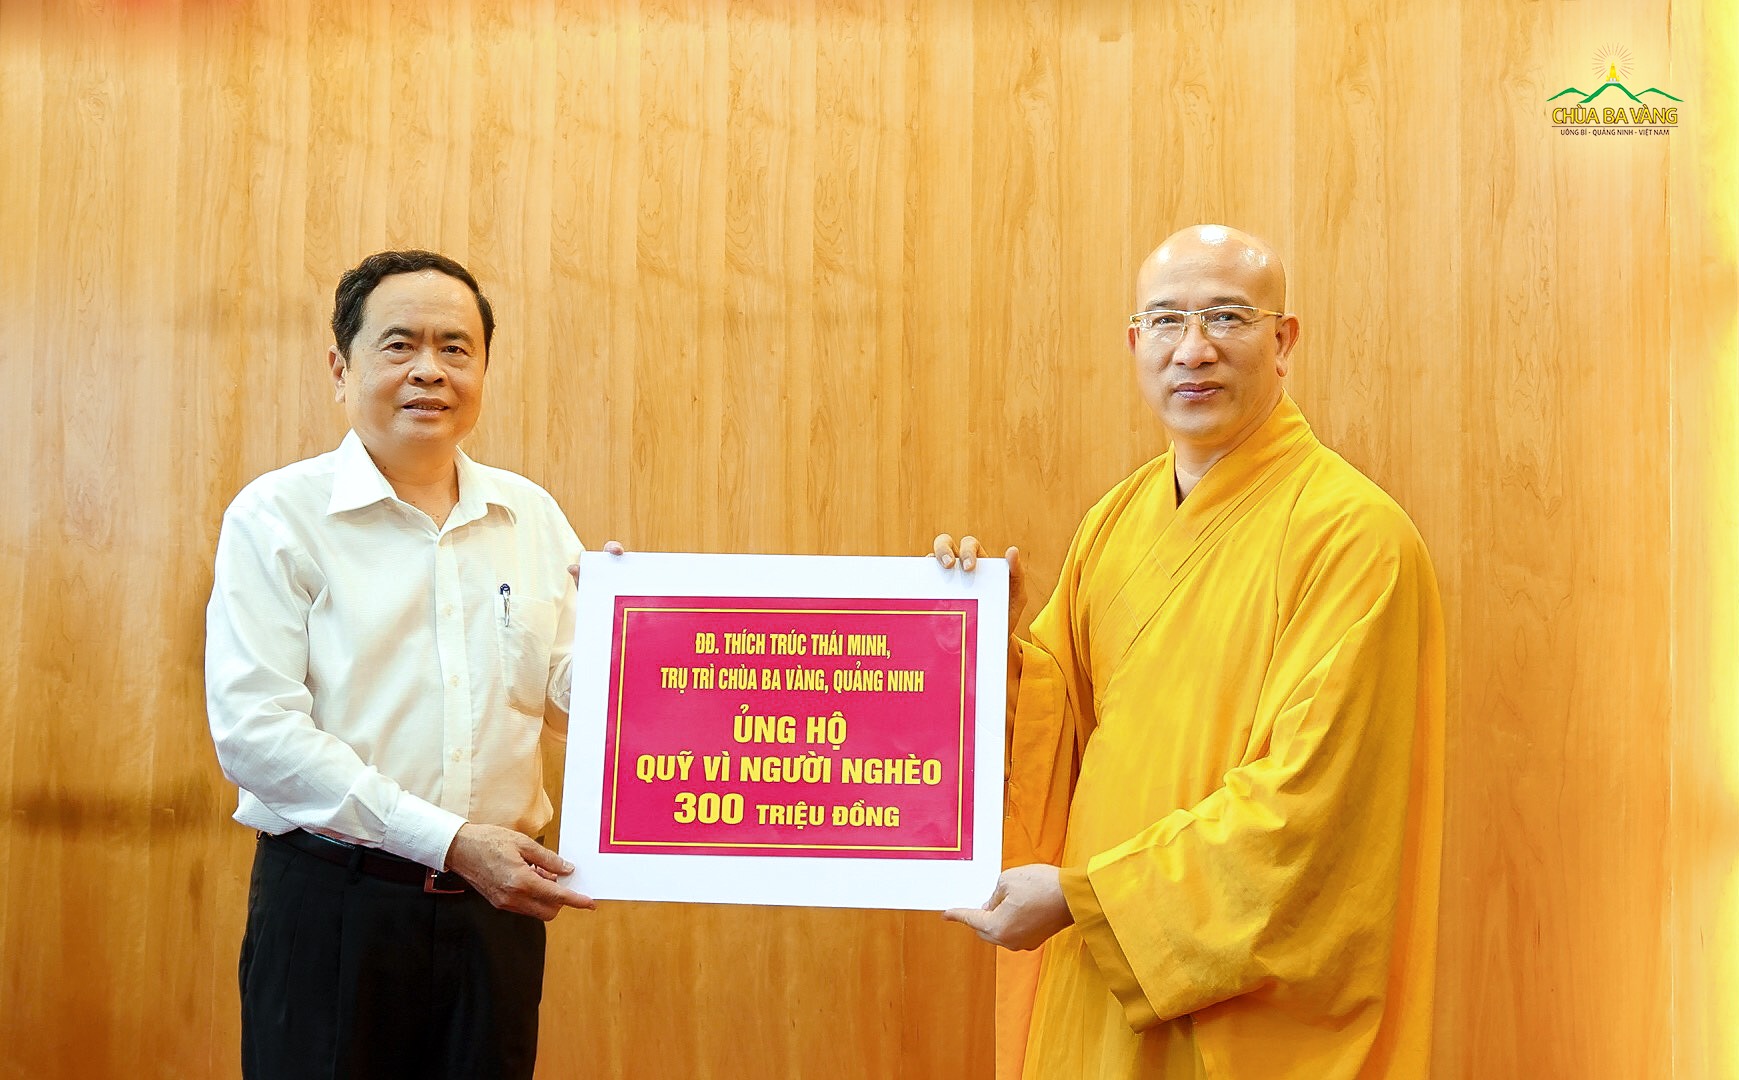 Sư Phụ Thích Trúc Thái Minh đã trao tặng quỹ